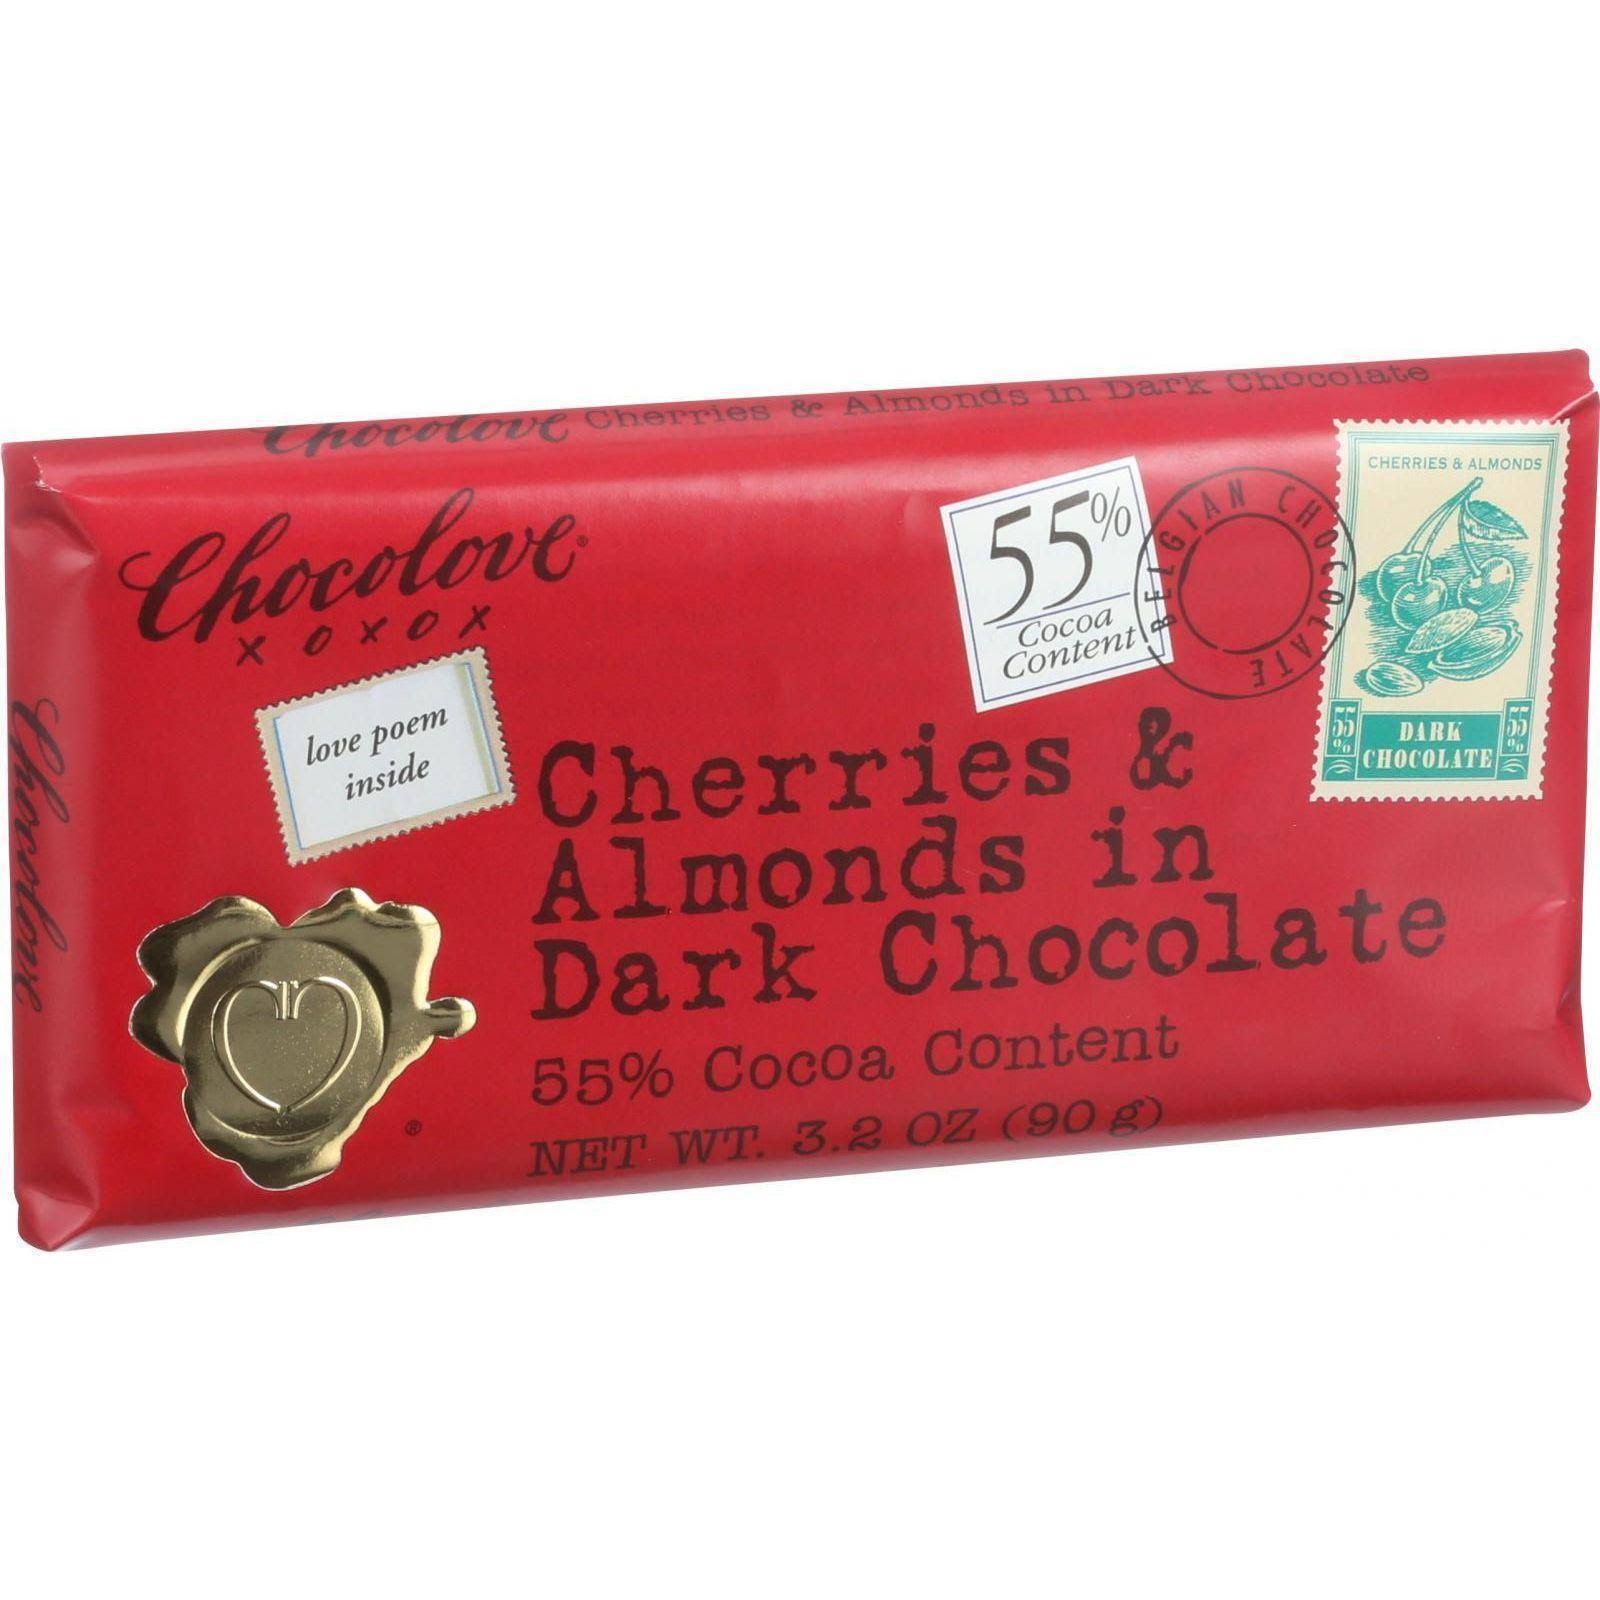 Chocolove Cherries & Almonds in Dark Chocolate - 90g